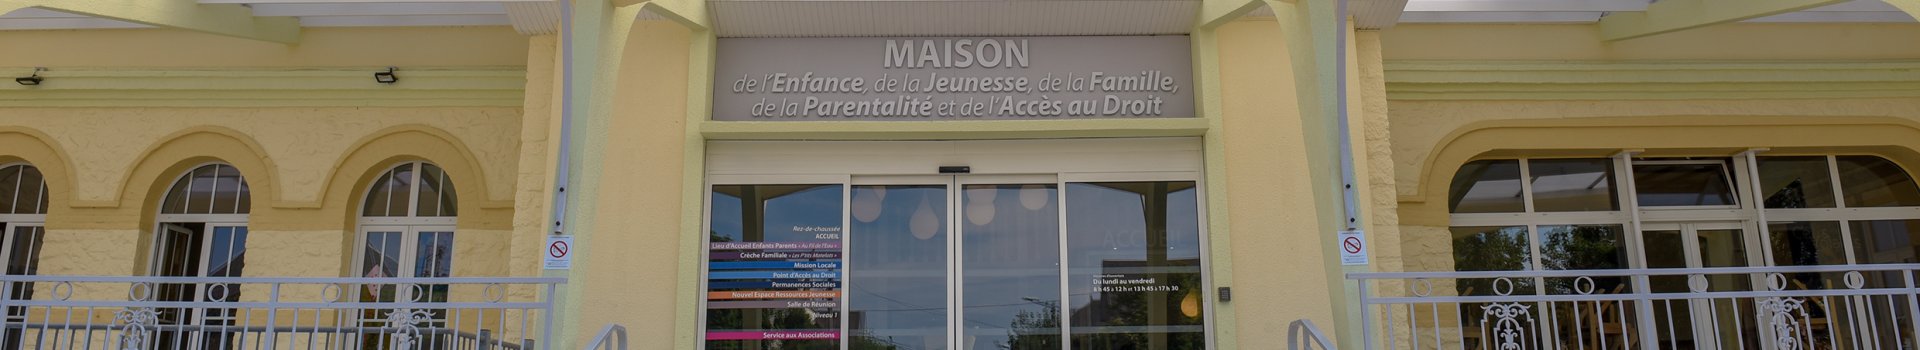 Maison de l'Enfance, de la Jeunesse, de la Famille, de la Parentalité et de l'Accès au Droit "Espace France Services"